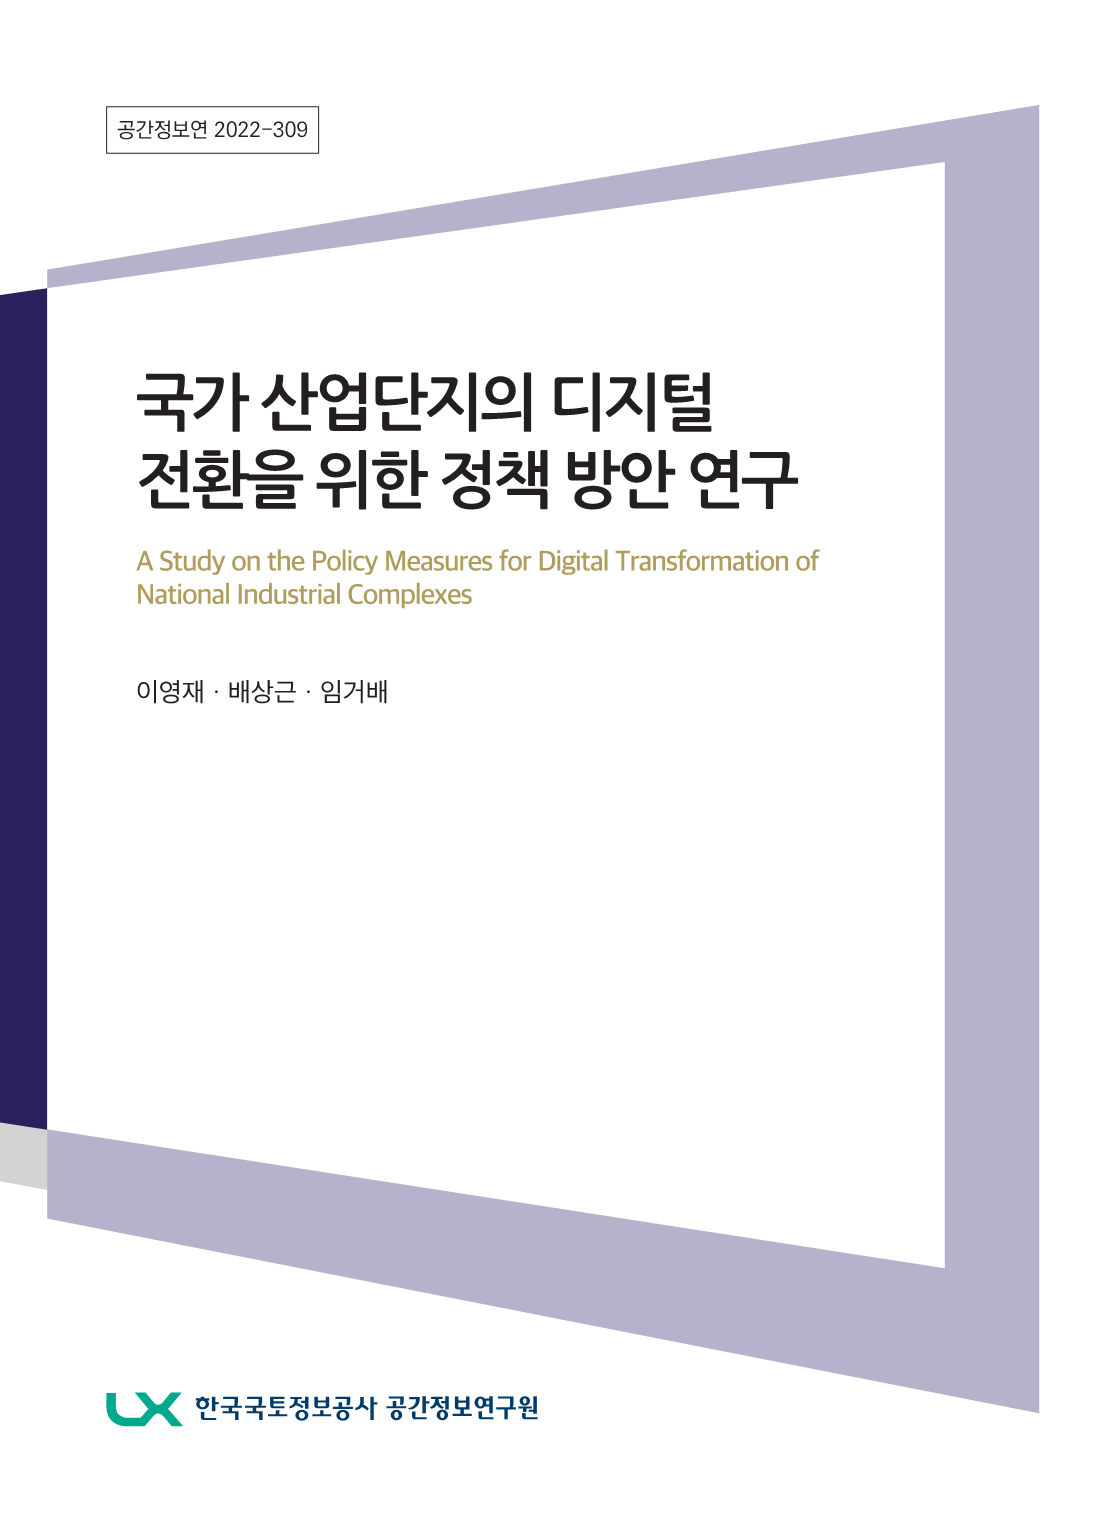 [비공개] 국가 산업단지 디지털 전환을 위한 정책 방안 연구